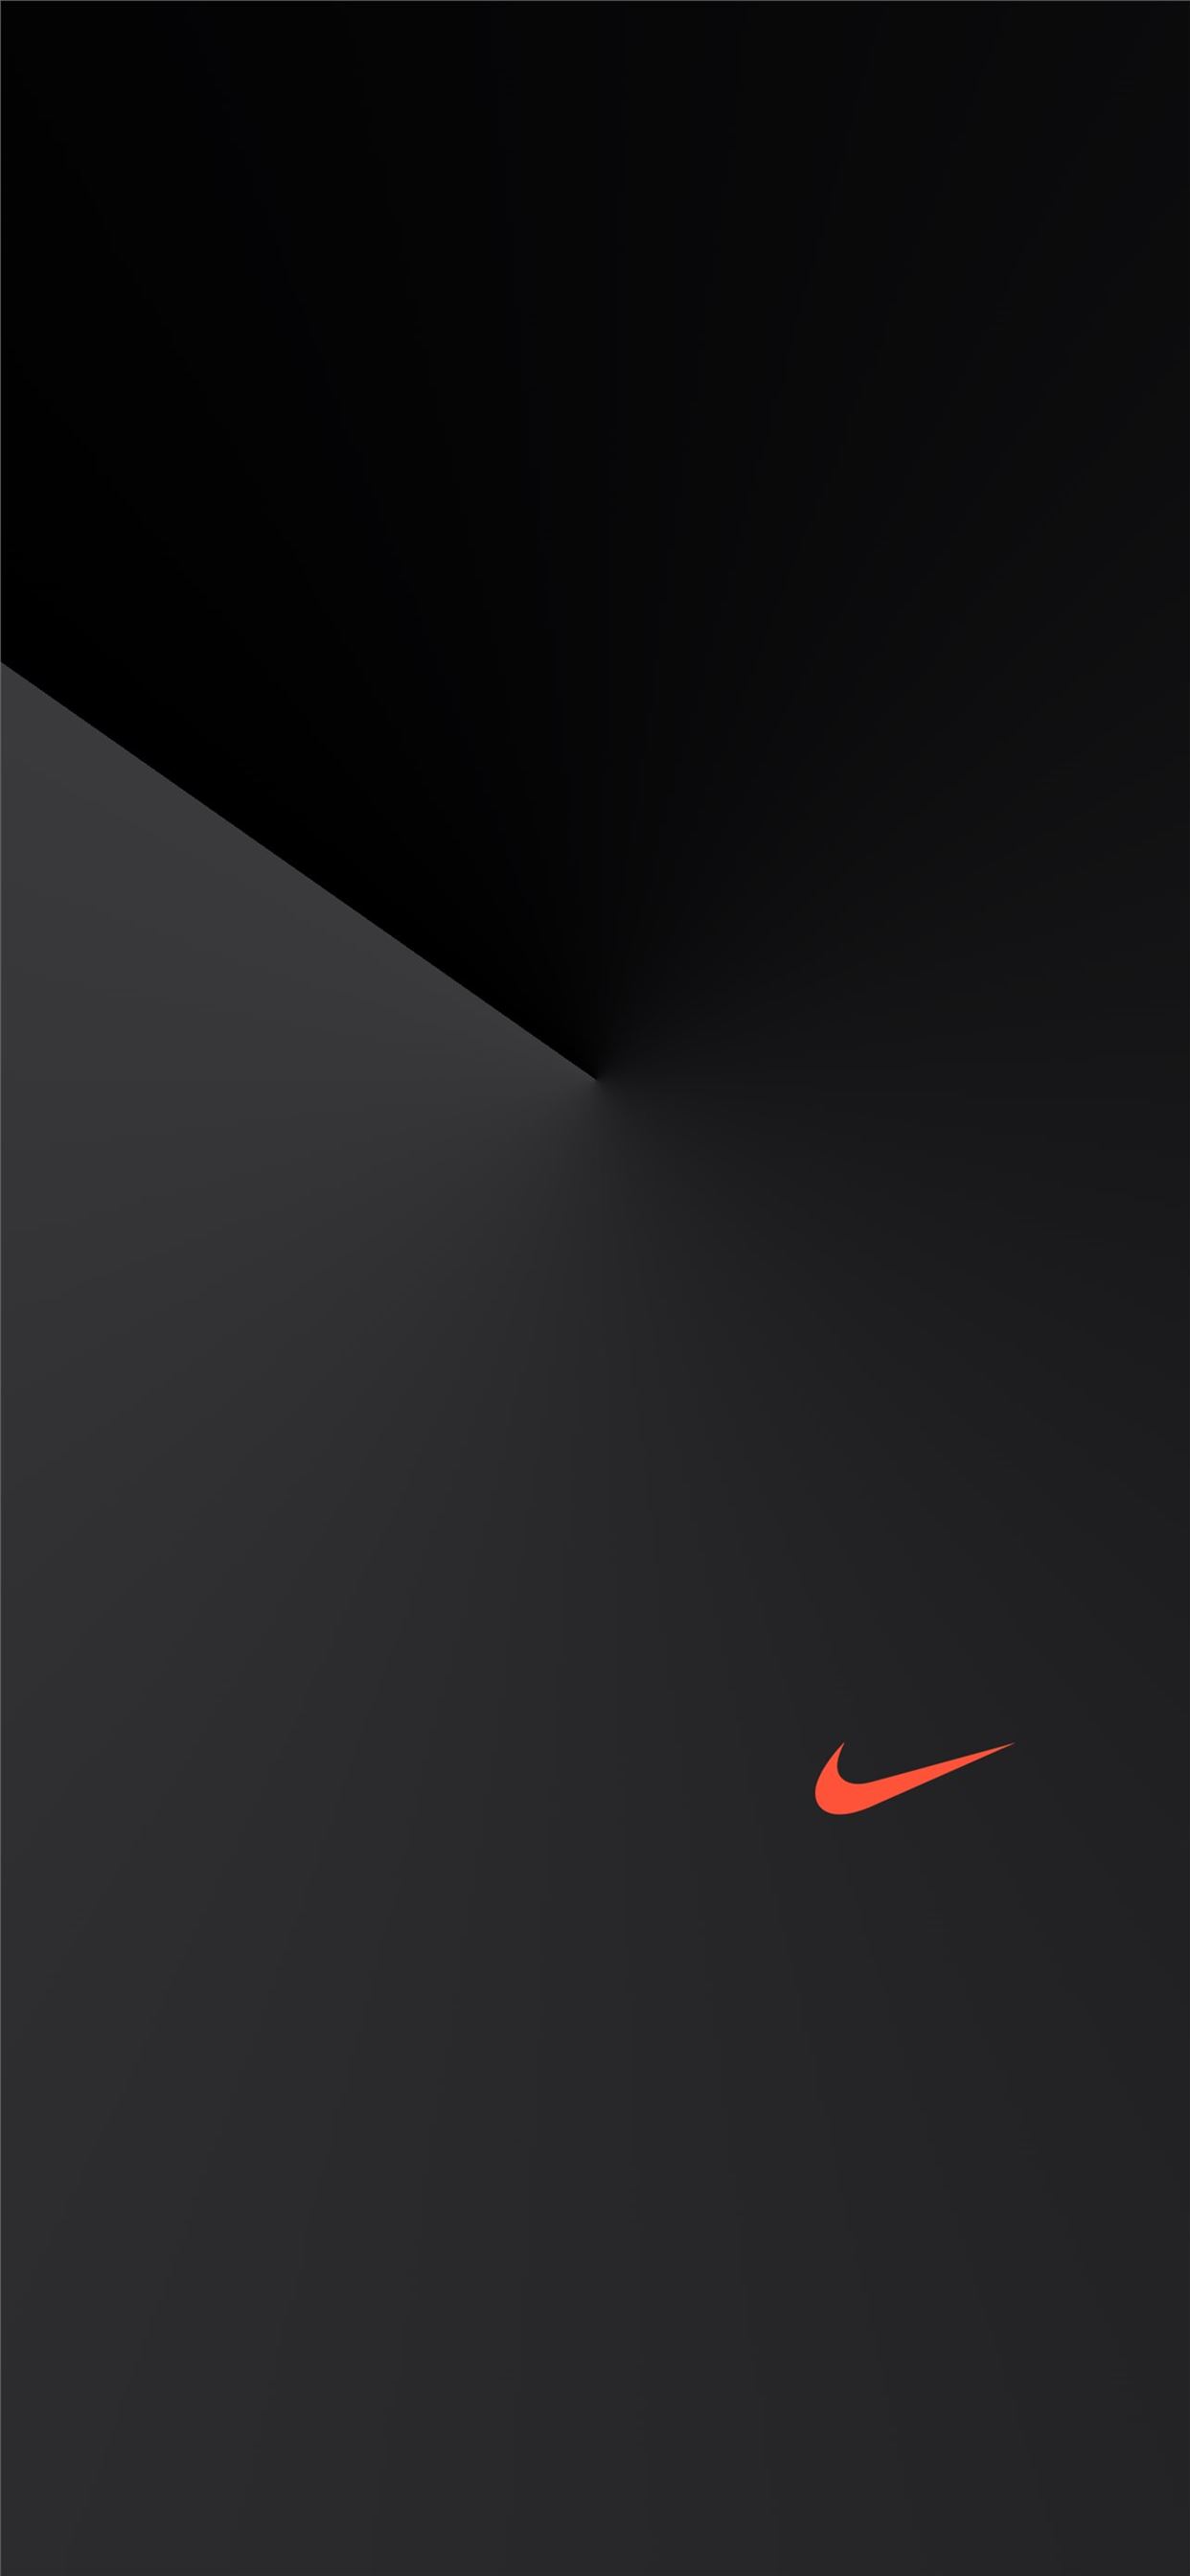 priester Nachtvlek long Nike Dark iPhone Wallpapers Free Download